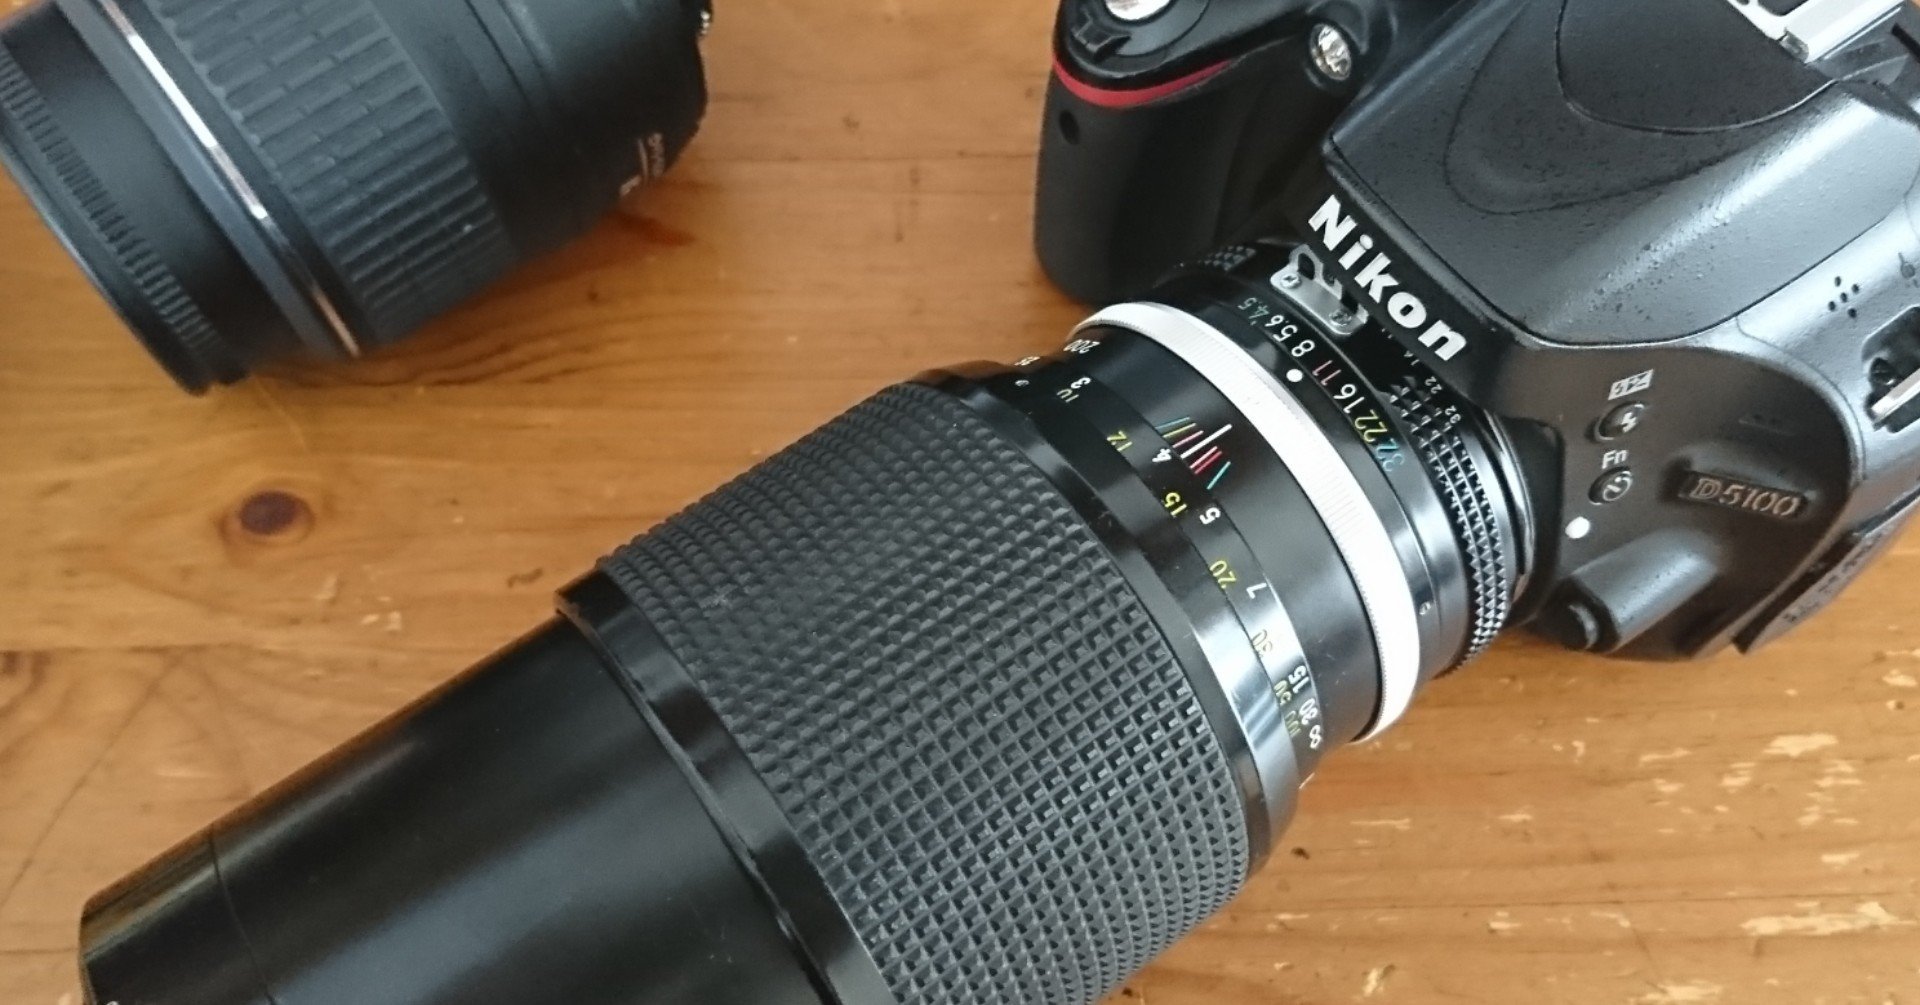 Nikon D5100&レンズ3本(標準ズーム&望遠ズーム&単焦点)